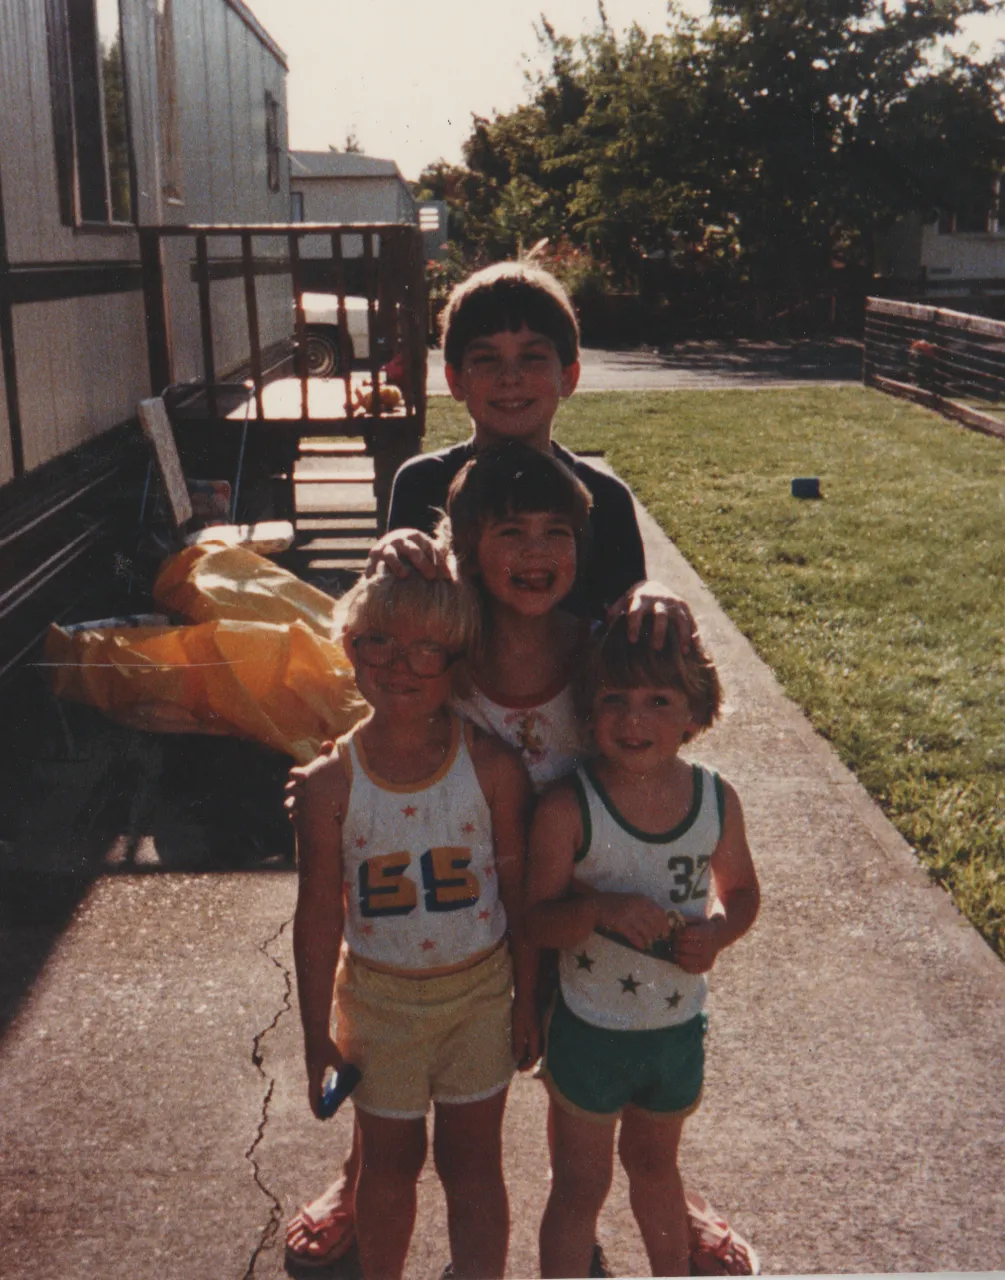 1985-08-16 - Friday - Nathan almost 9, Alan at 4.5, Katie 5, Rick at 3.5, at 163, behind front porch.png